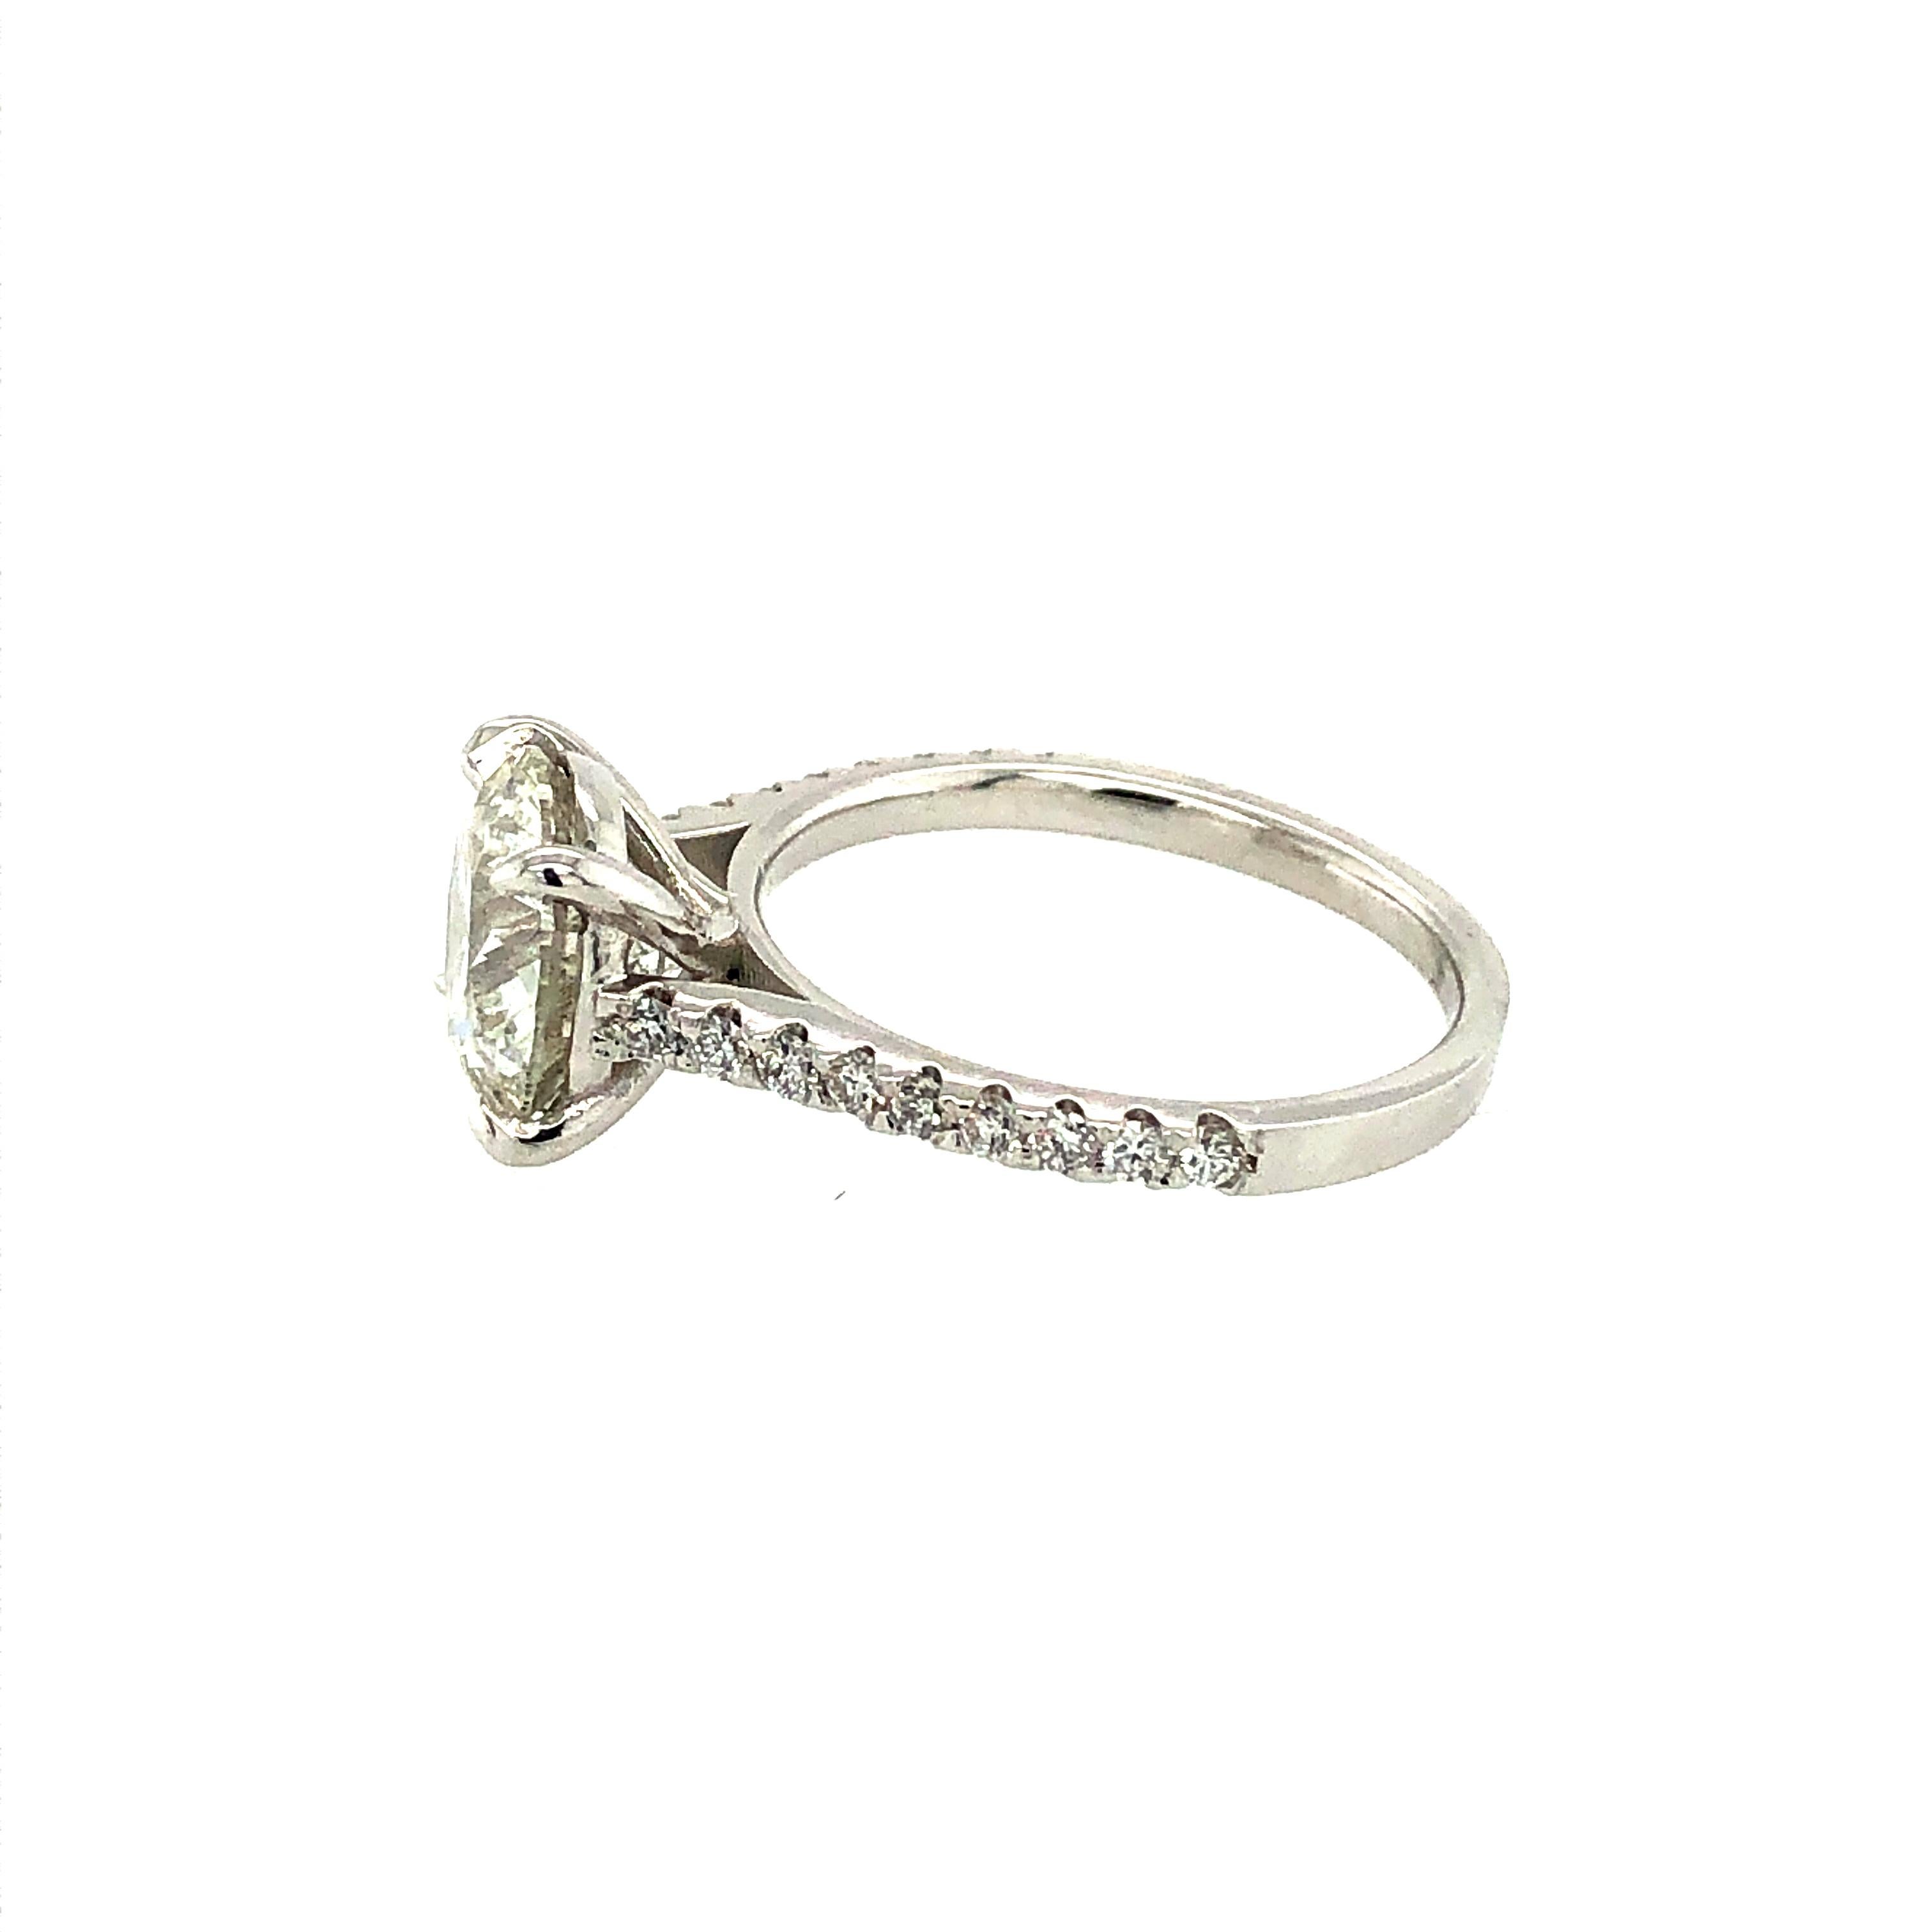 Brilliant Cut 3.04 Carat Diamond Engagement Ring Platinum